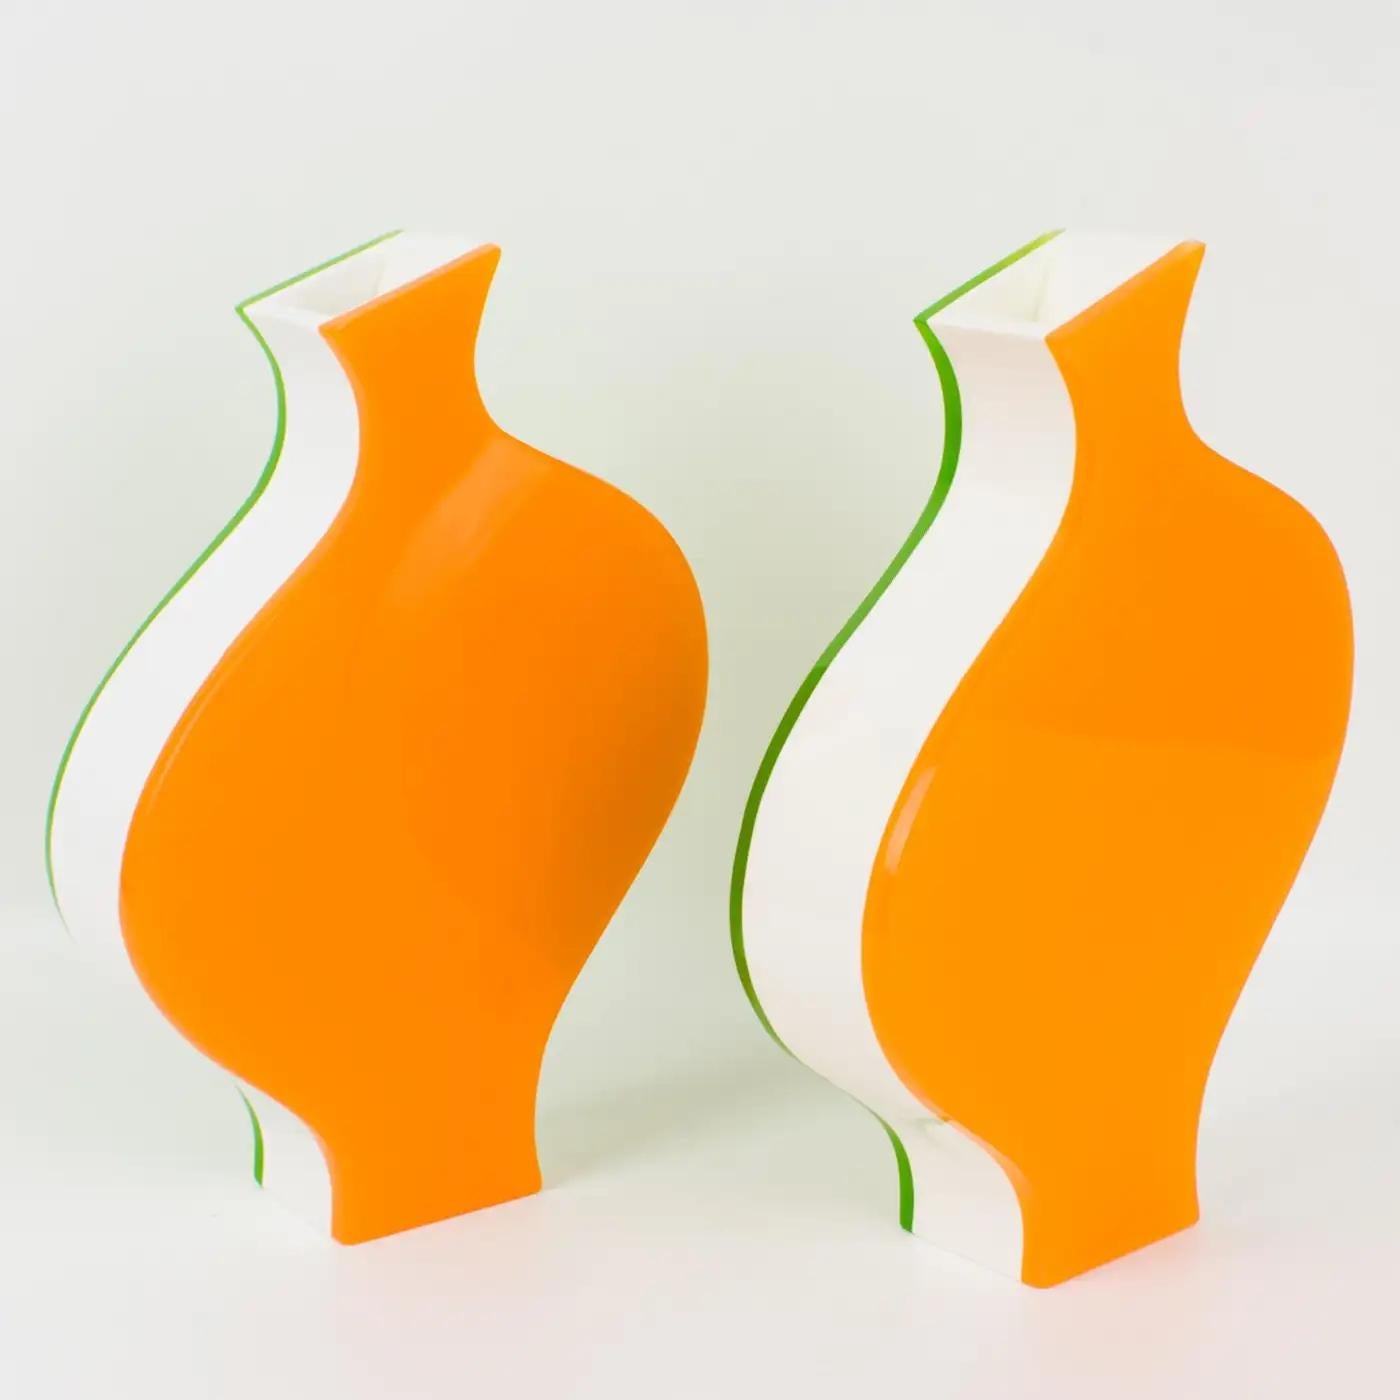 Villeroy & Boch a produit cette jolie paire de vases dans les années 1990. Cette conception ludique est moderne avec une incroyable combinaison de couleurs. Chaque vase est constitué d'un sandwich multicouche d'acrylique, de lucite ou de plexiglas